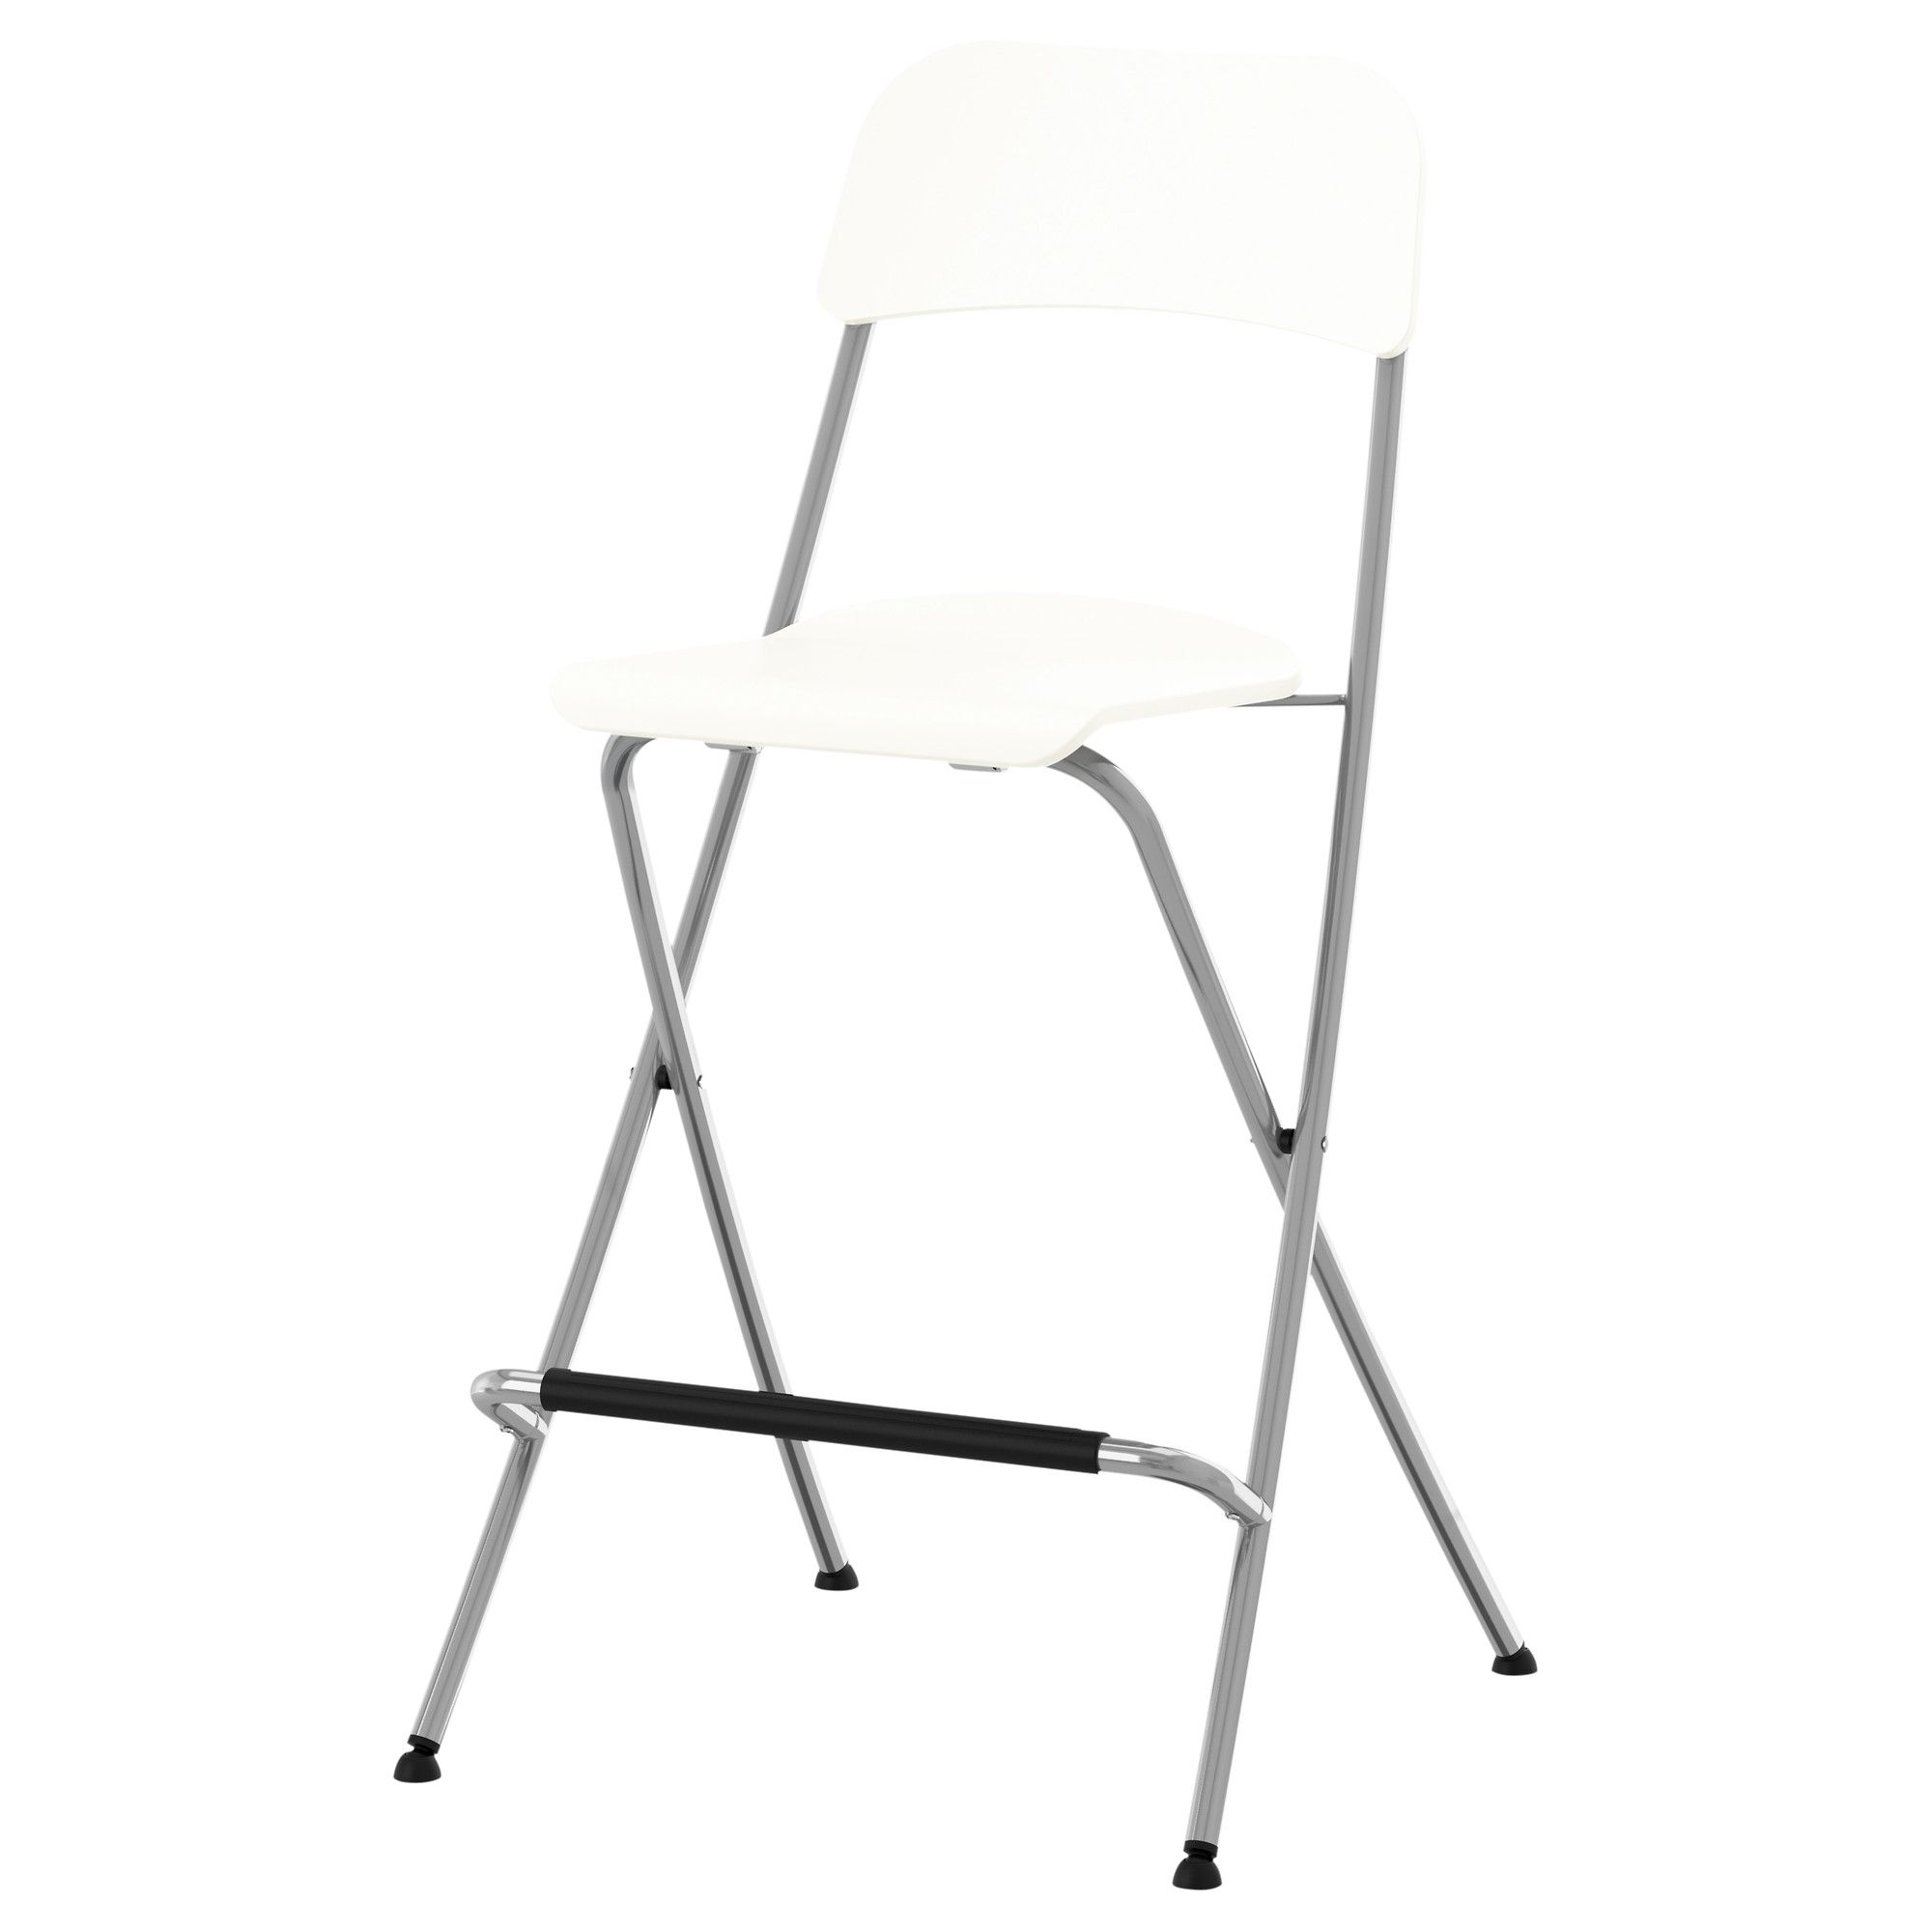 стулья складные со спинкой белые